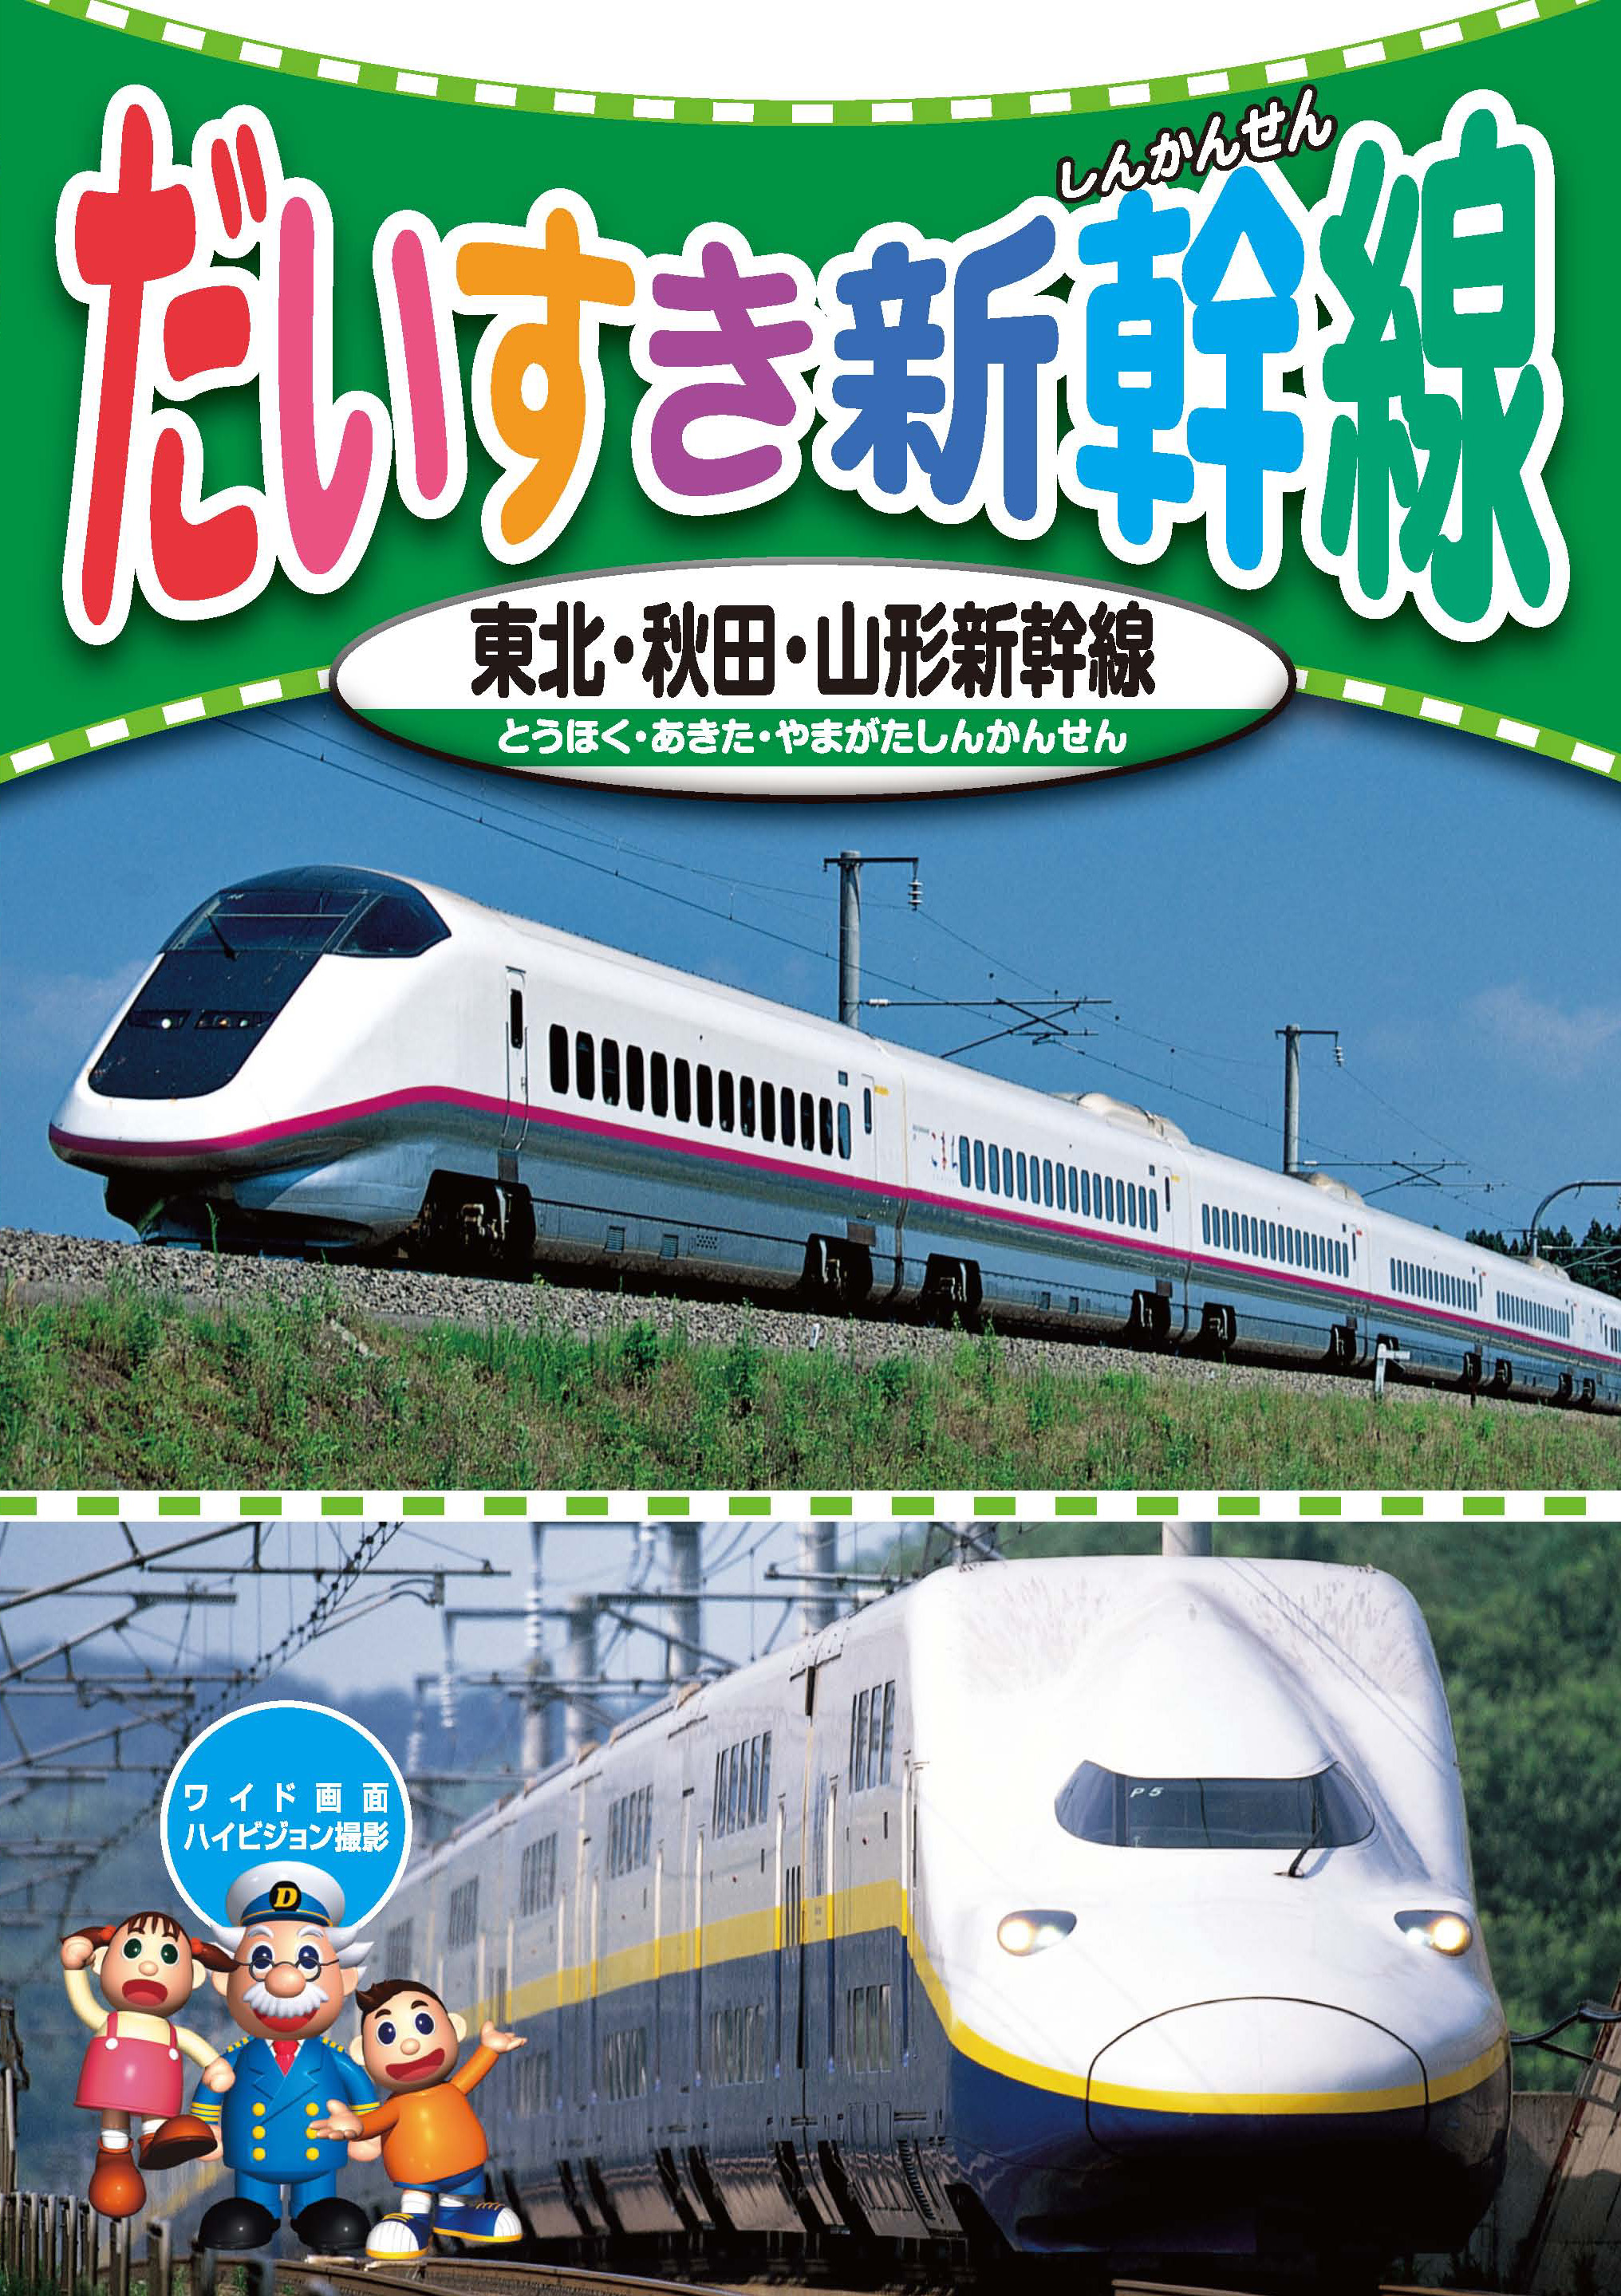 だいすき新幹線 1 東北・秋田・山形新幹線